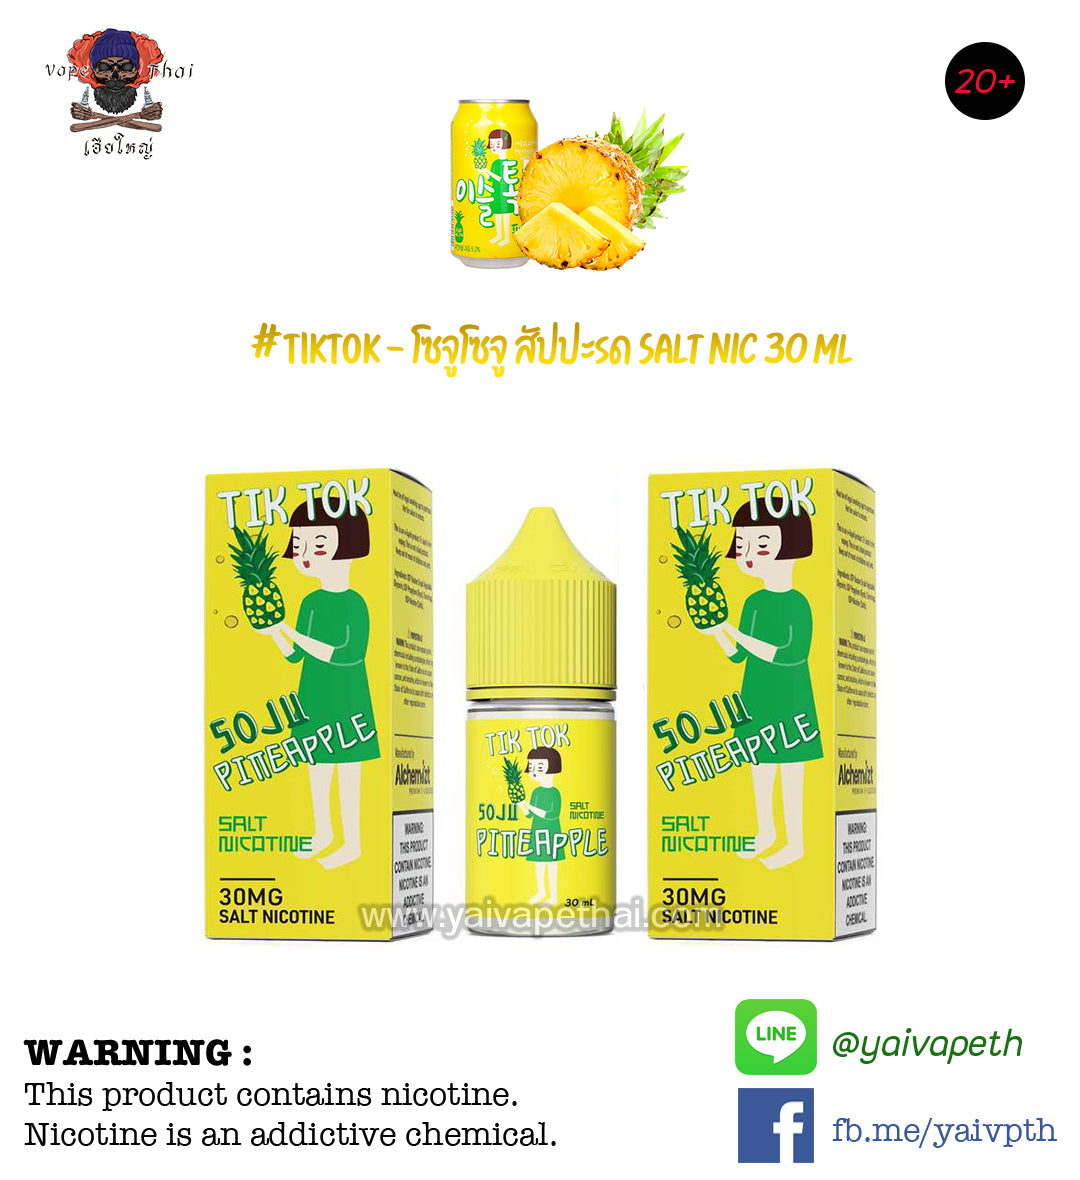 โซจูสัปปะรด - น้ำยาบุหรี่ไฟฟ้า Tik Tok Soju Pineapple Salt nic 30 ml (แบรนด์ไทย) [เย็น] ของแท้ 100% - YAIVAPETHAI  No.1